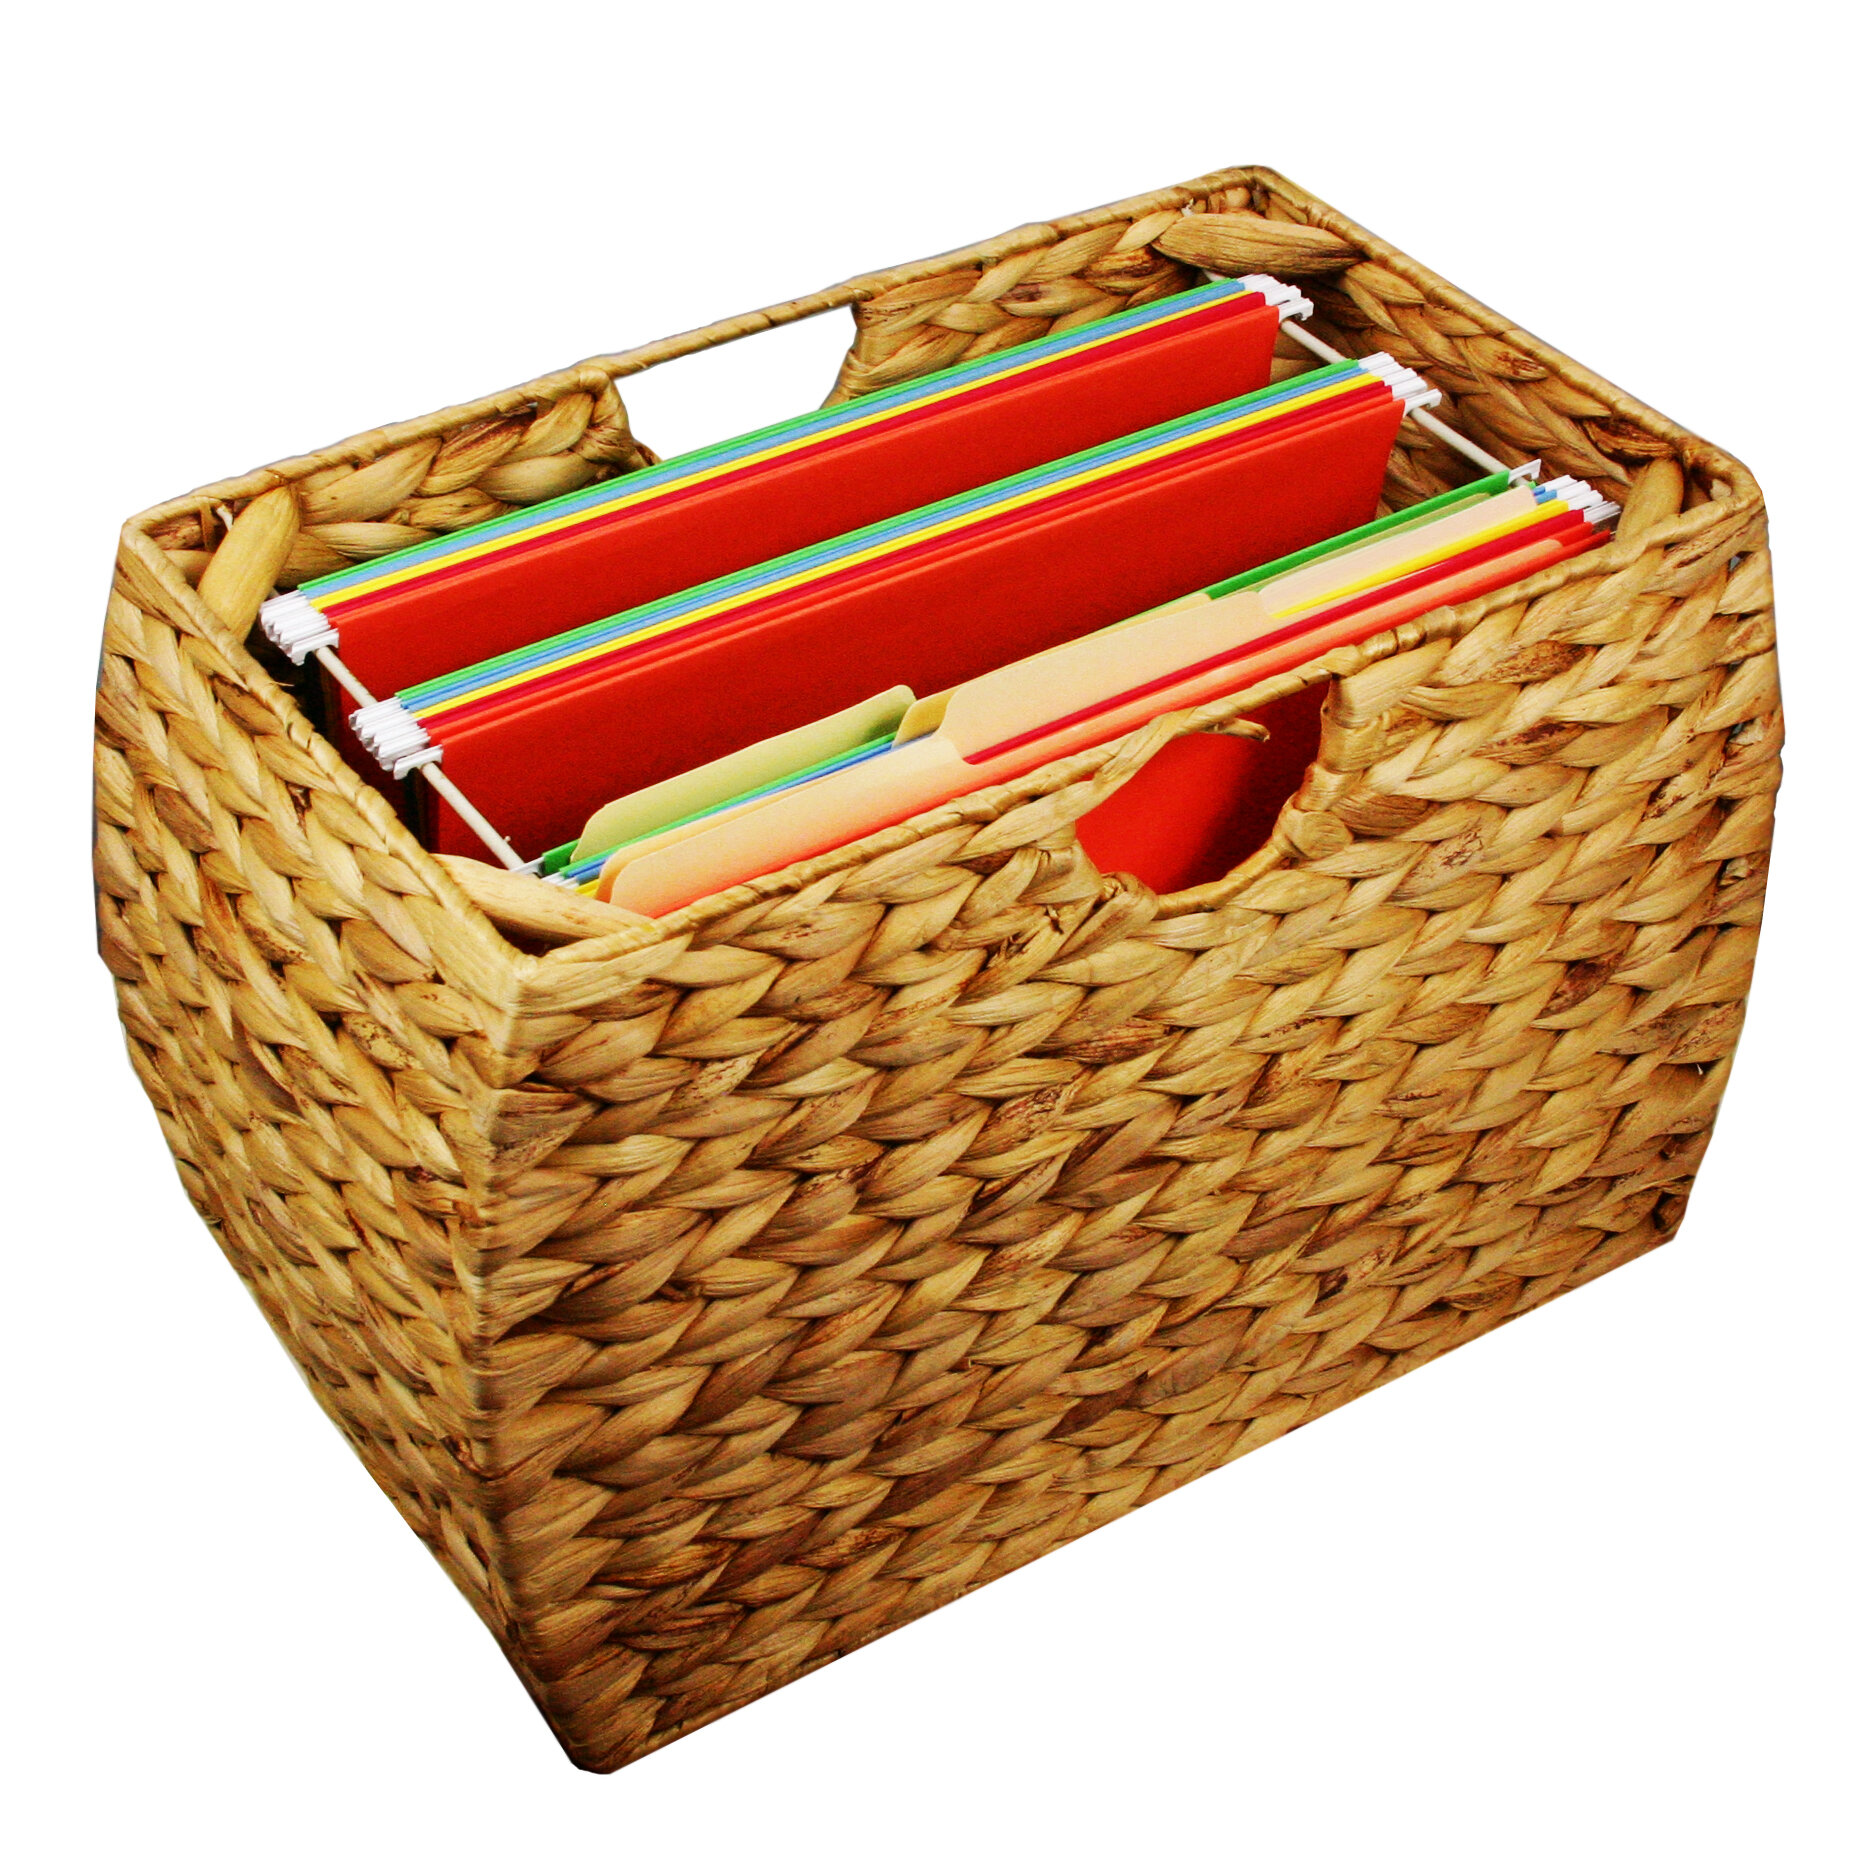 https://assets.wfcdn.com/im/92467533/compr-r85/1546/154623659/seagrass-basket-storage-wicker-for-hanging-file-folder-with-liner.jpg